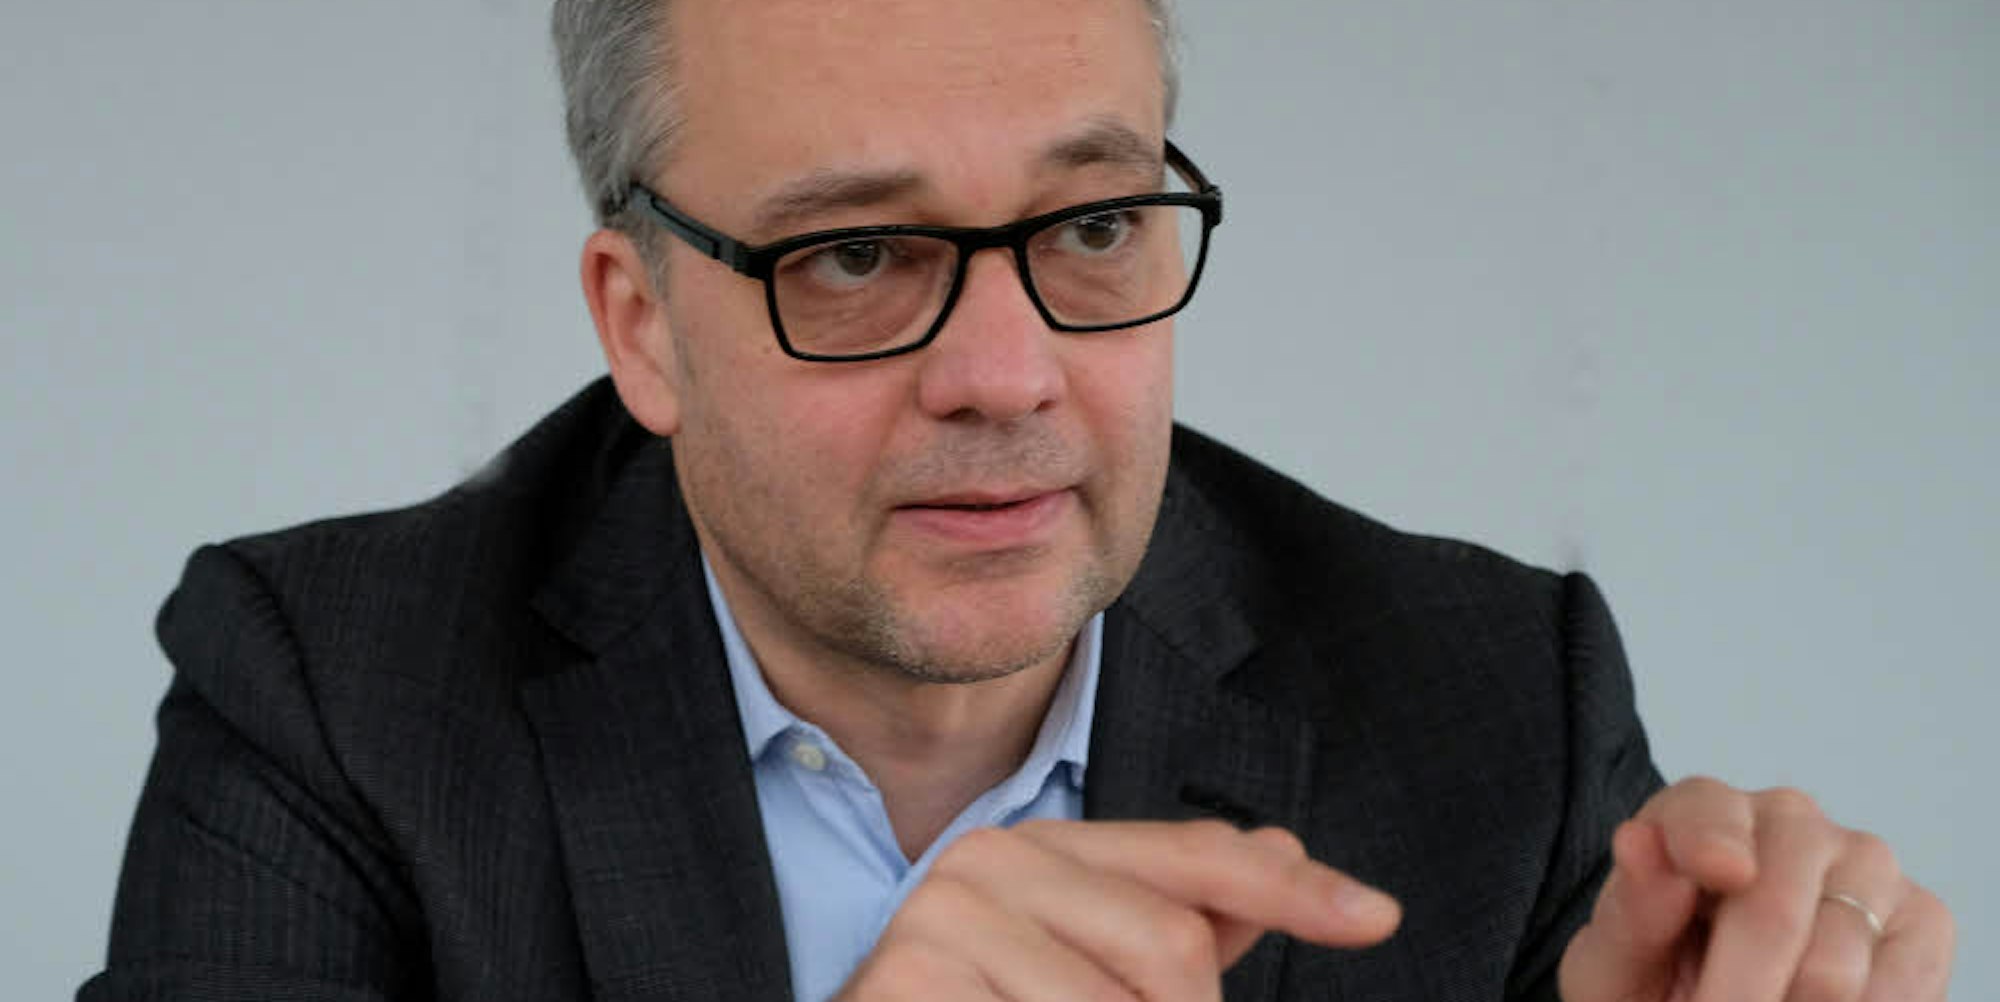 Jens Beckert, geboren 1967, ist seit 2005 Direktor am Max-Planck-Institut für Gesellschaftsforschung und Professor für Soziologie in Köln.